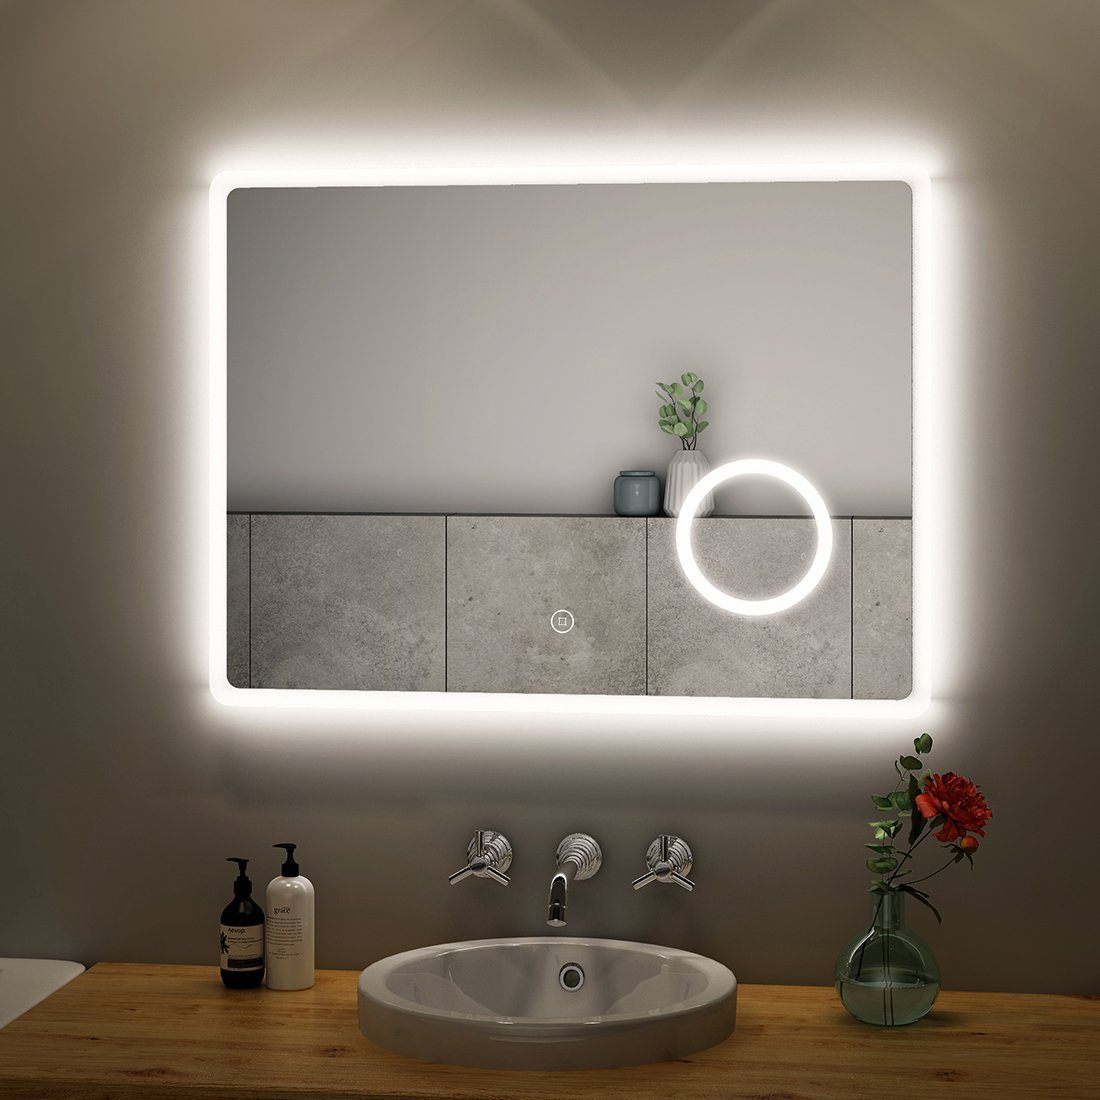 S'AFIELINA Badspiegel Led Badspiegel mit Beleuchtung Wandspiegel, 80x60cm,Kaltweiß 6500K,Touchschalter,3-fach Vergrößerung,IP 54